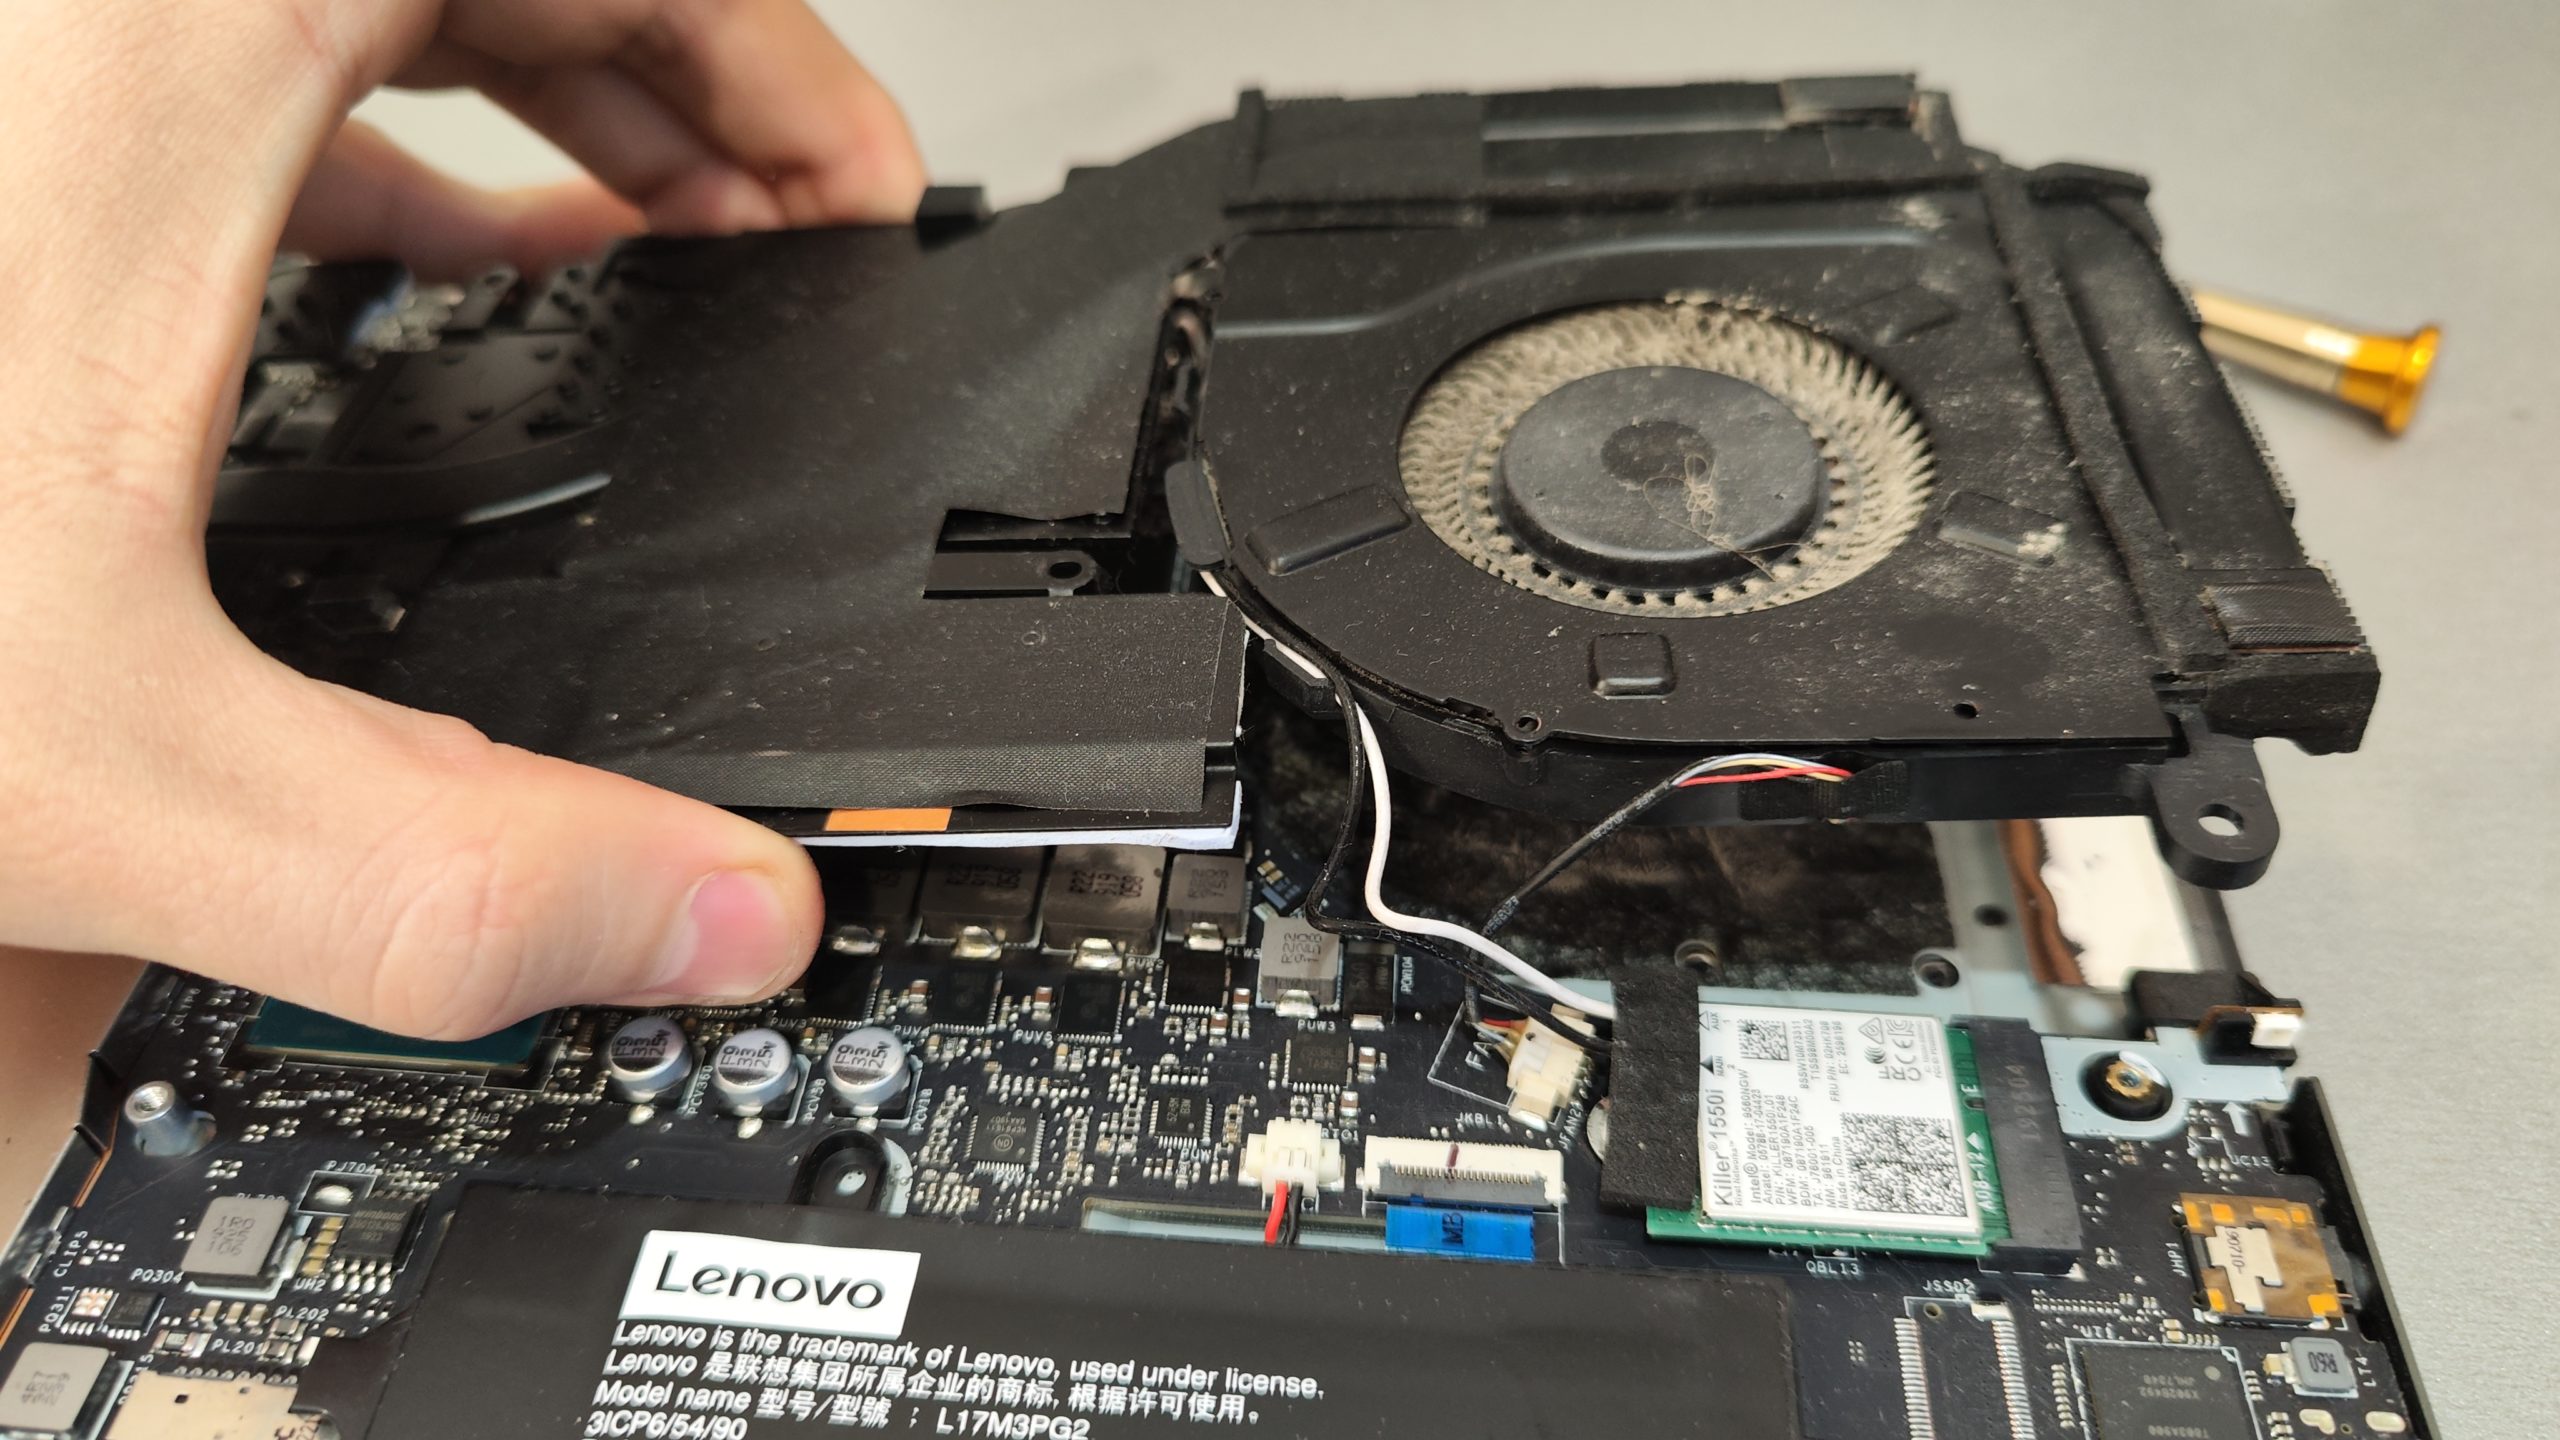 Как поменять термопасту на процессоре в ноутбуке и как почистить ноутбук от пыли и заменить термопасту на процессоре